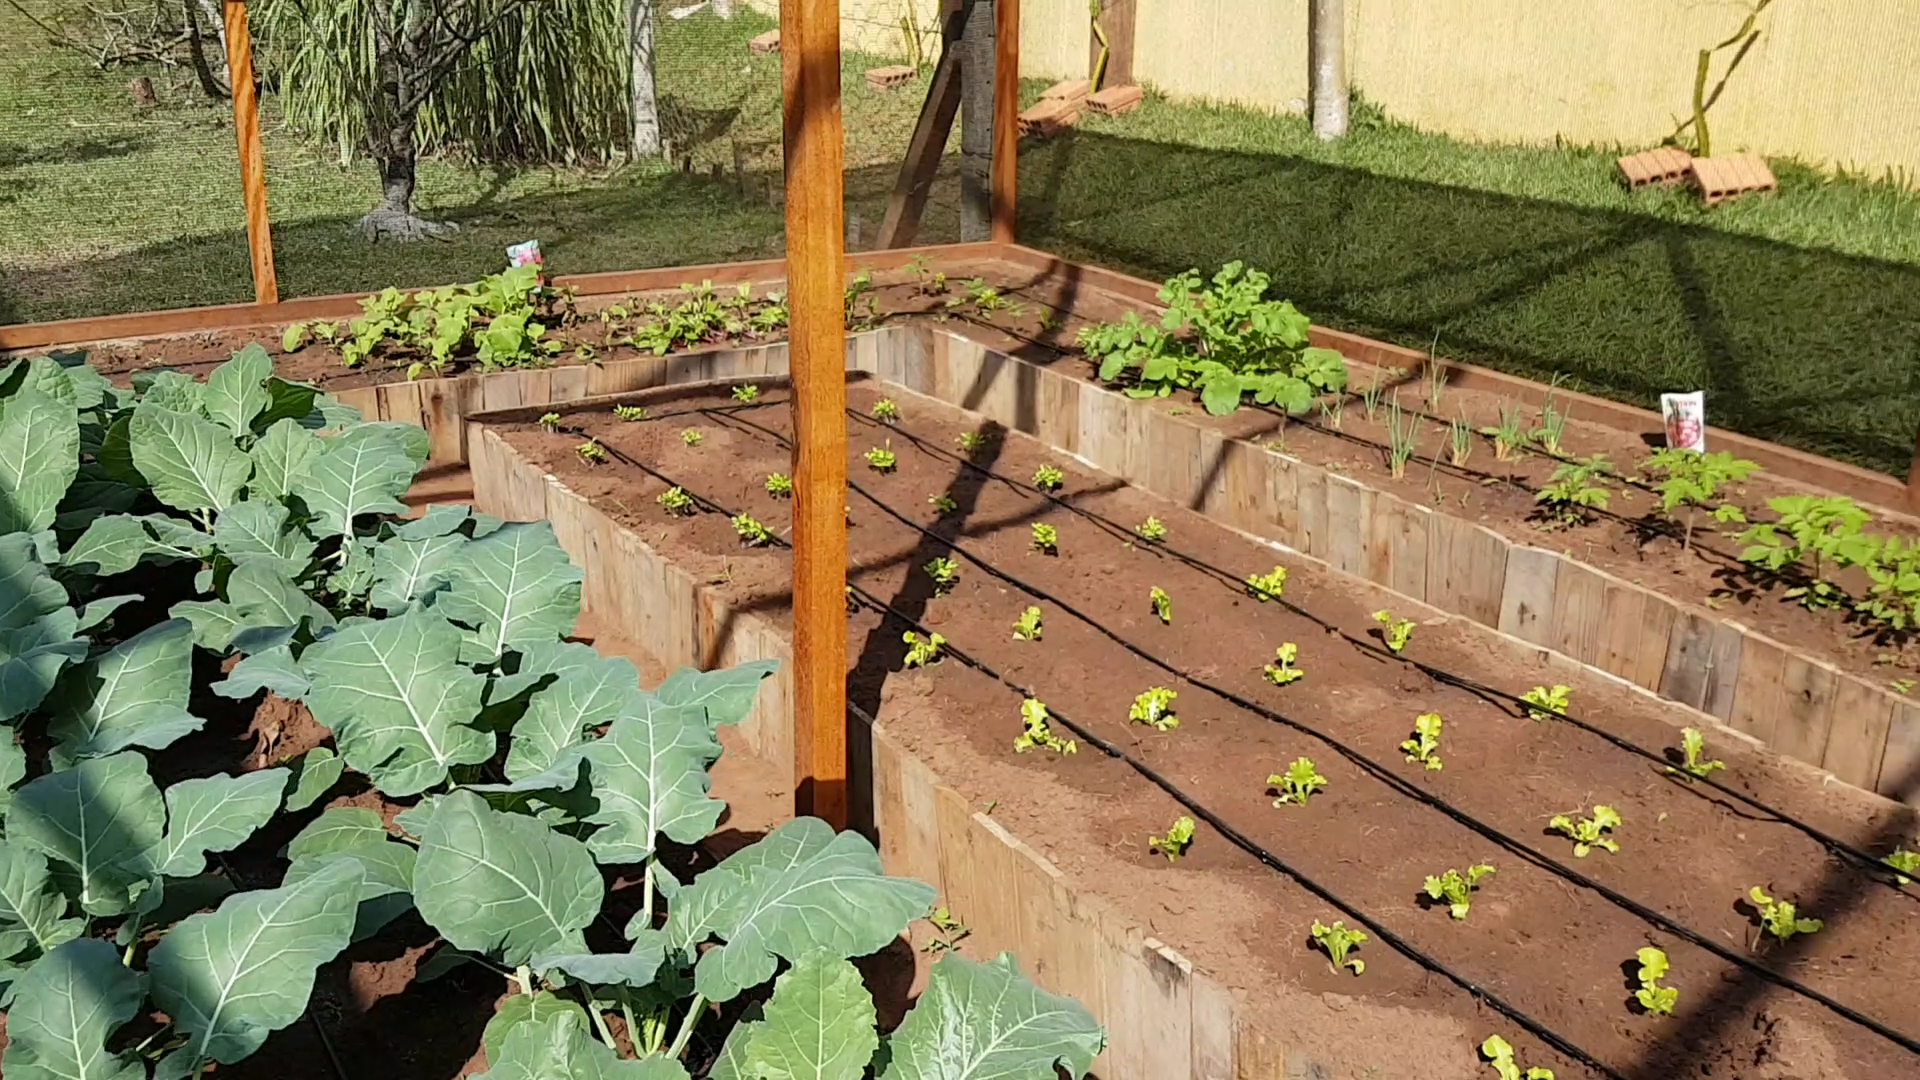 Projeto Integrador de Araras desenvolve ferramenta para controle de hortas caseiras